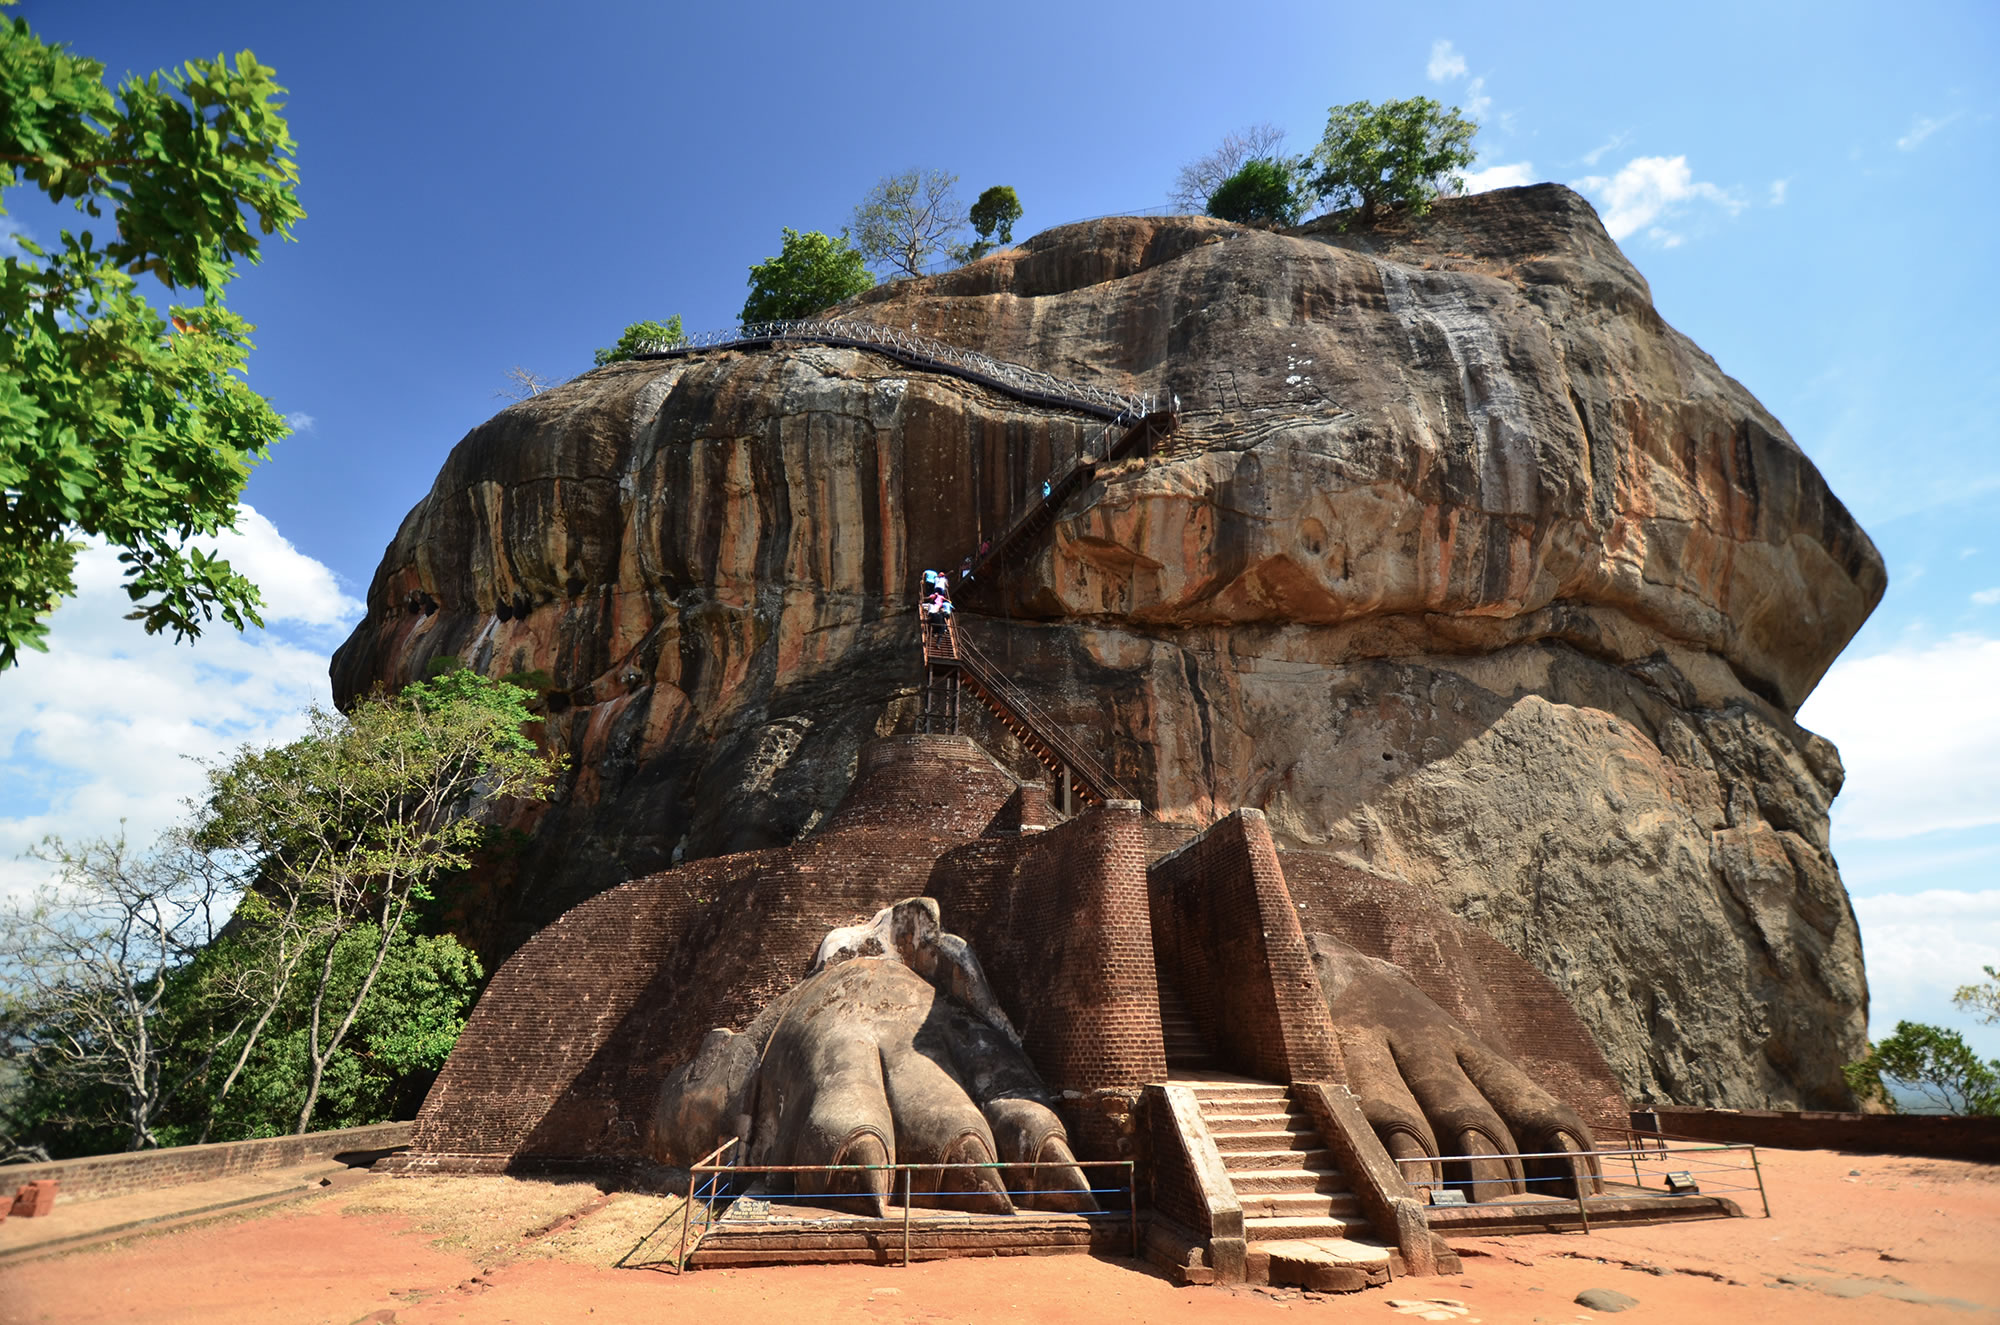 Sigiriya lion rock fortress